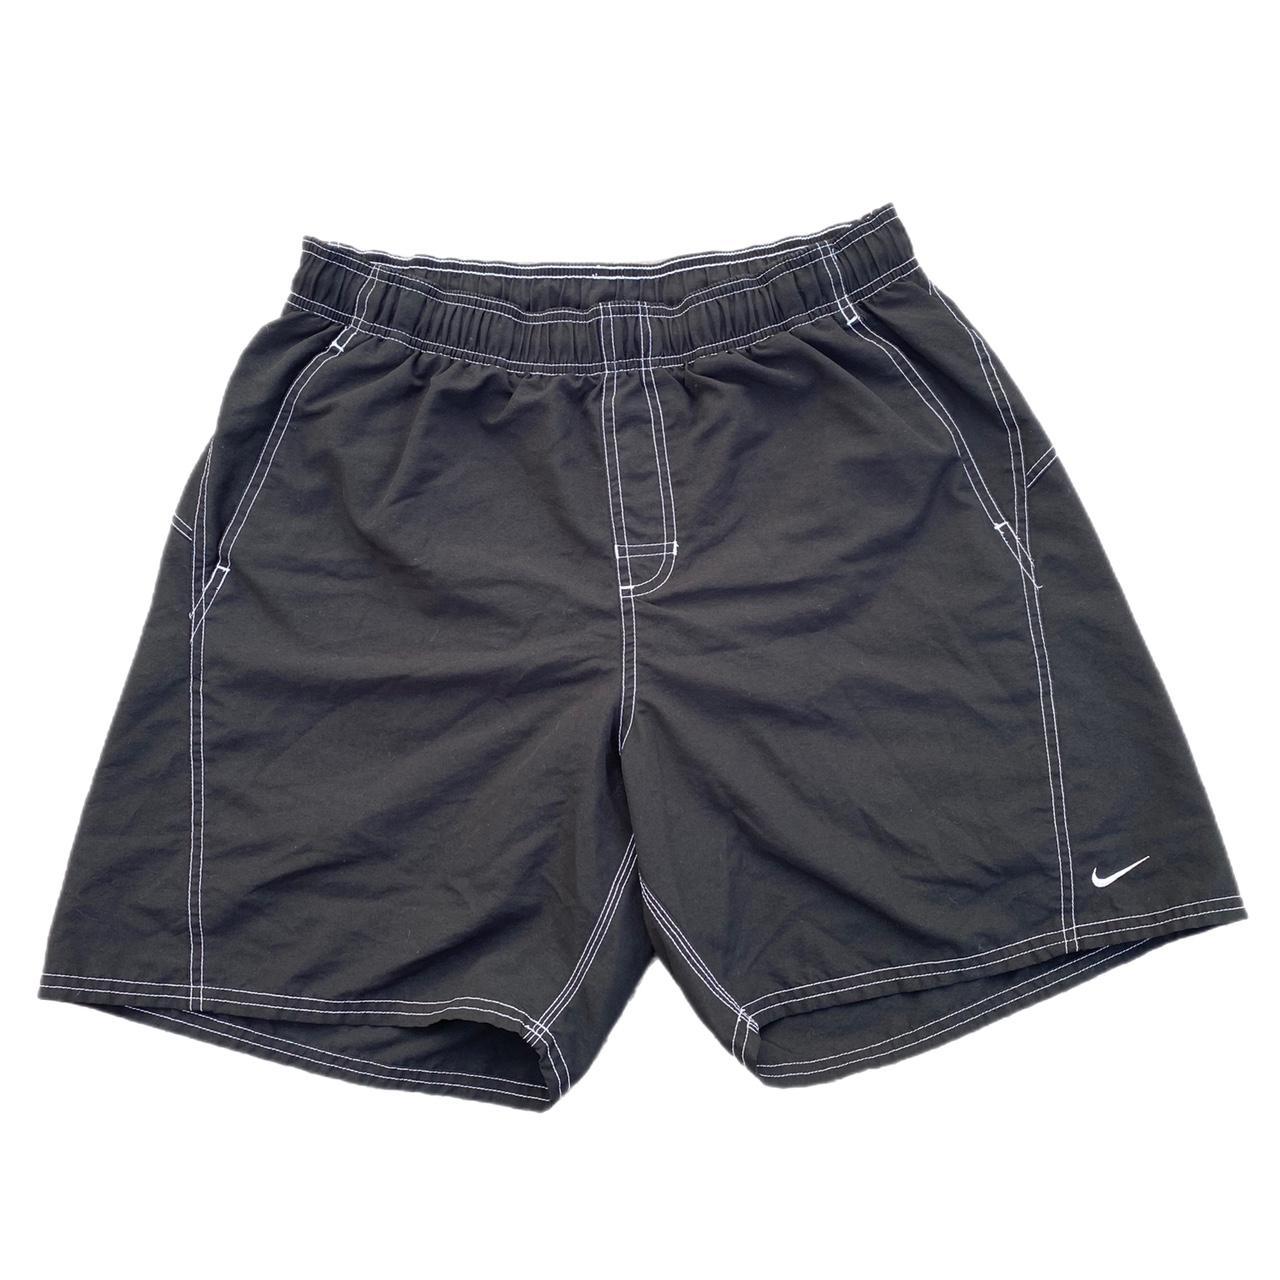 Nike Men's Black and White Swim-briefs-shorts